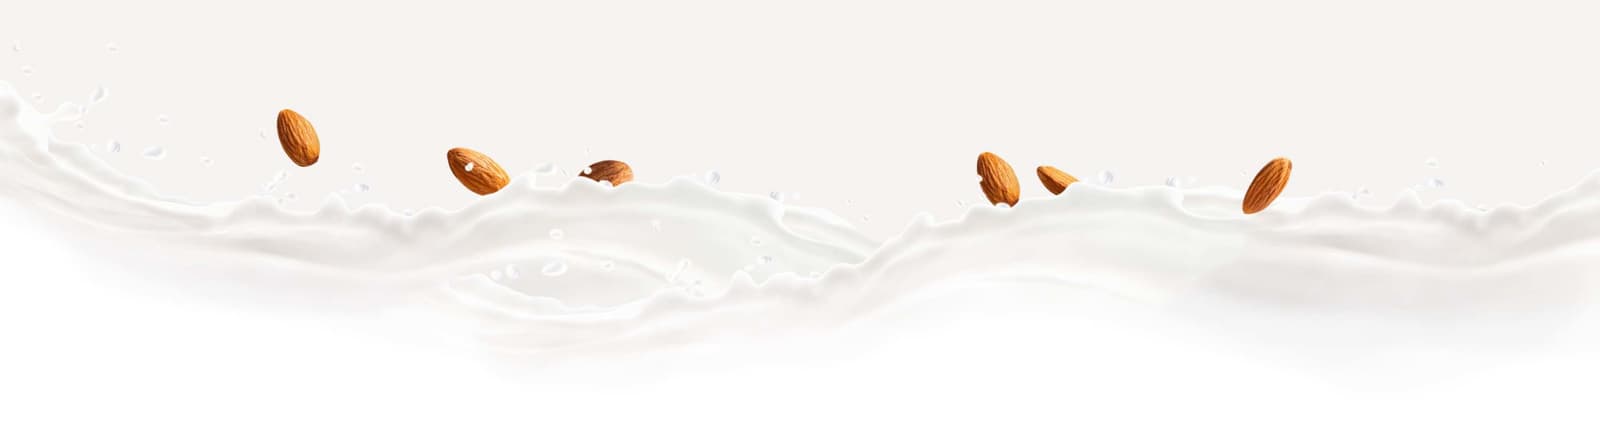 Almonds splashing into almondmilk.